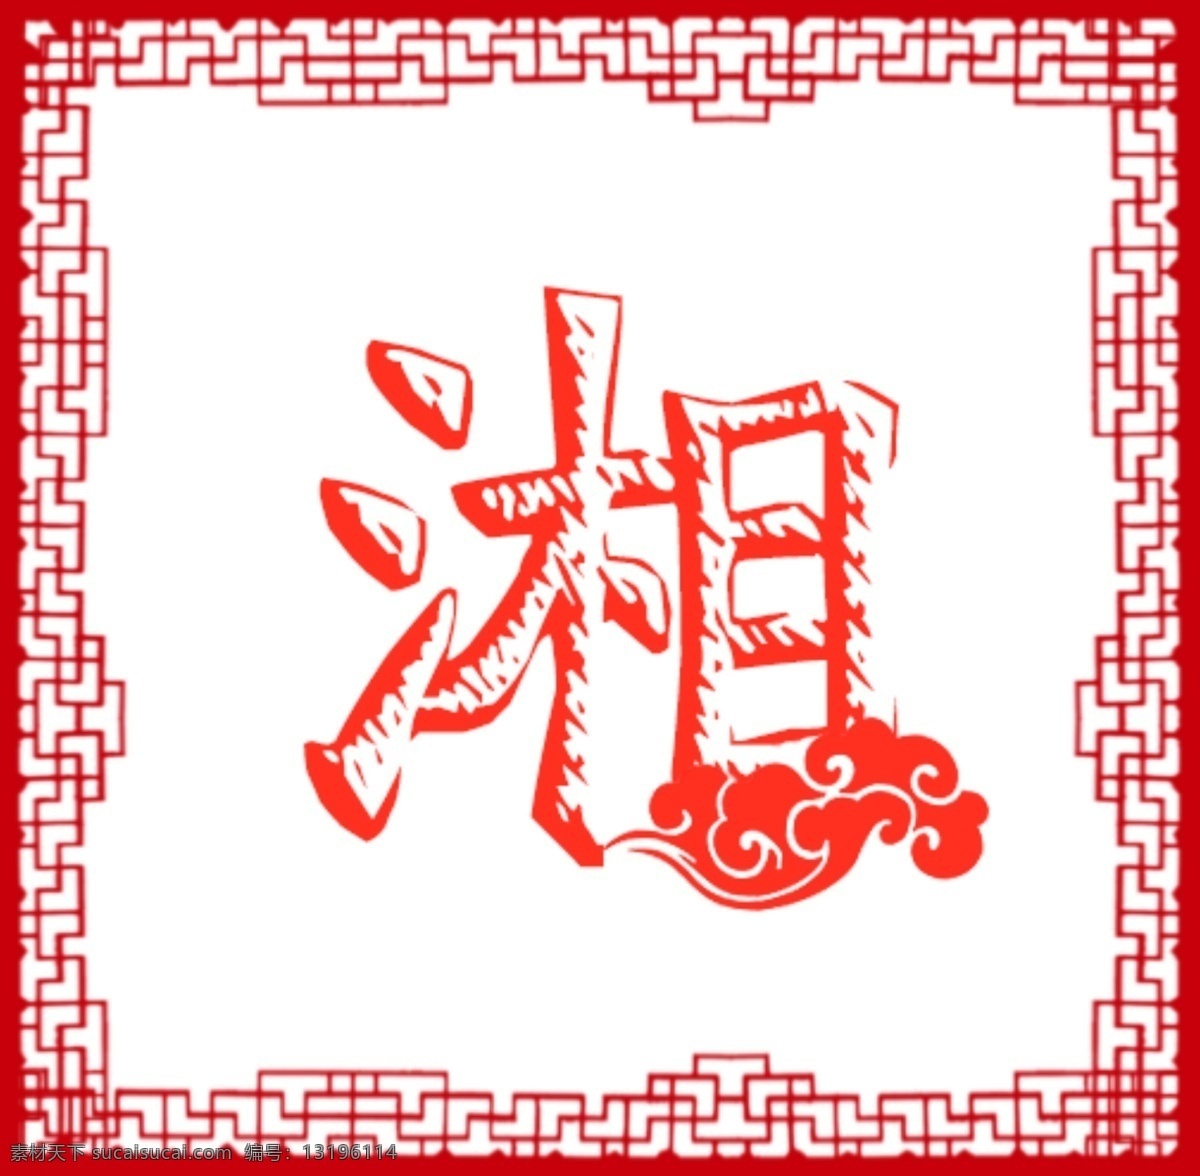 湘菜馆 饭店 logo 湘 红色 云朵 全部可编辑 低价 平常 分享 图 标志图标 其他图标